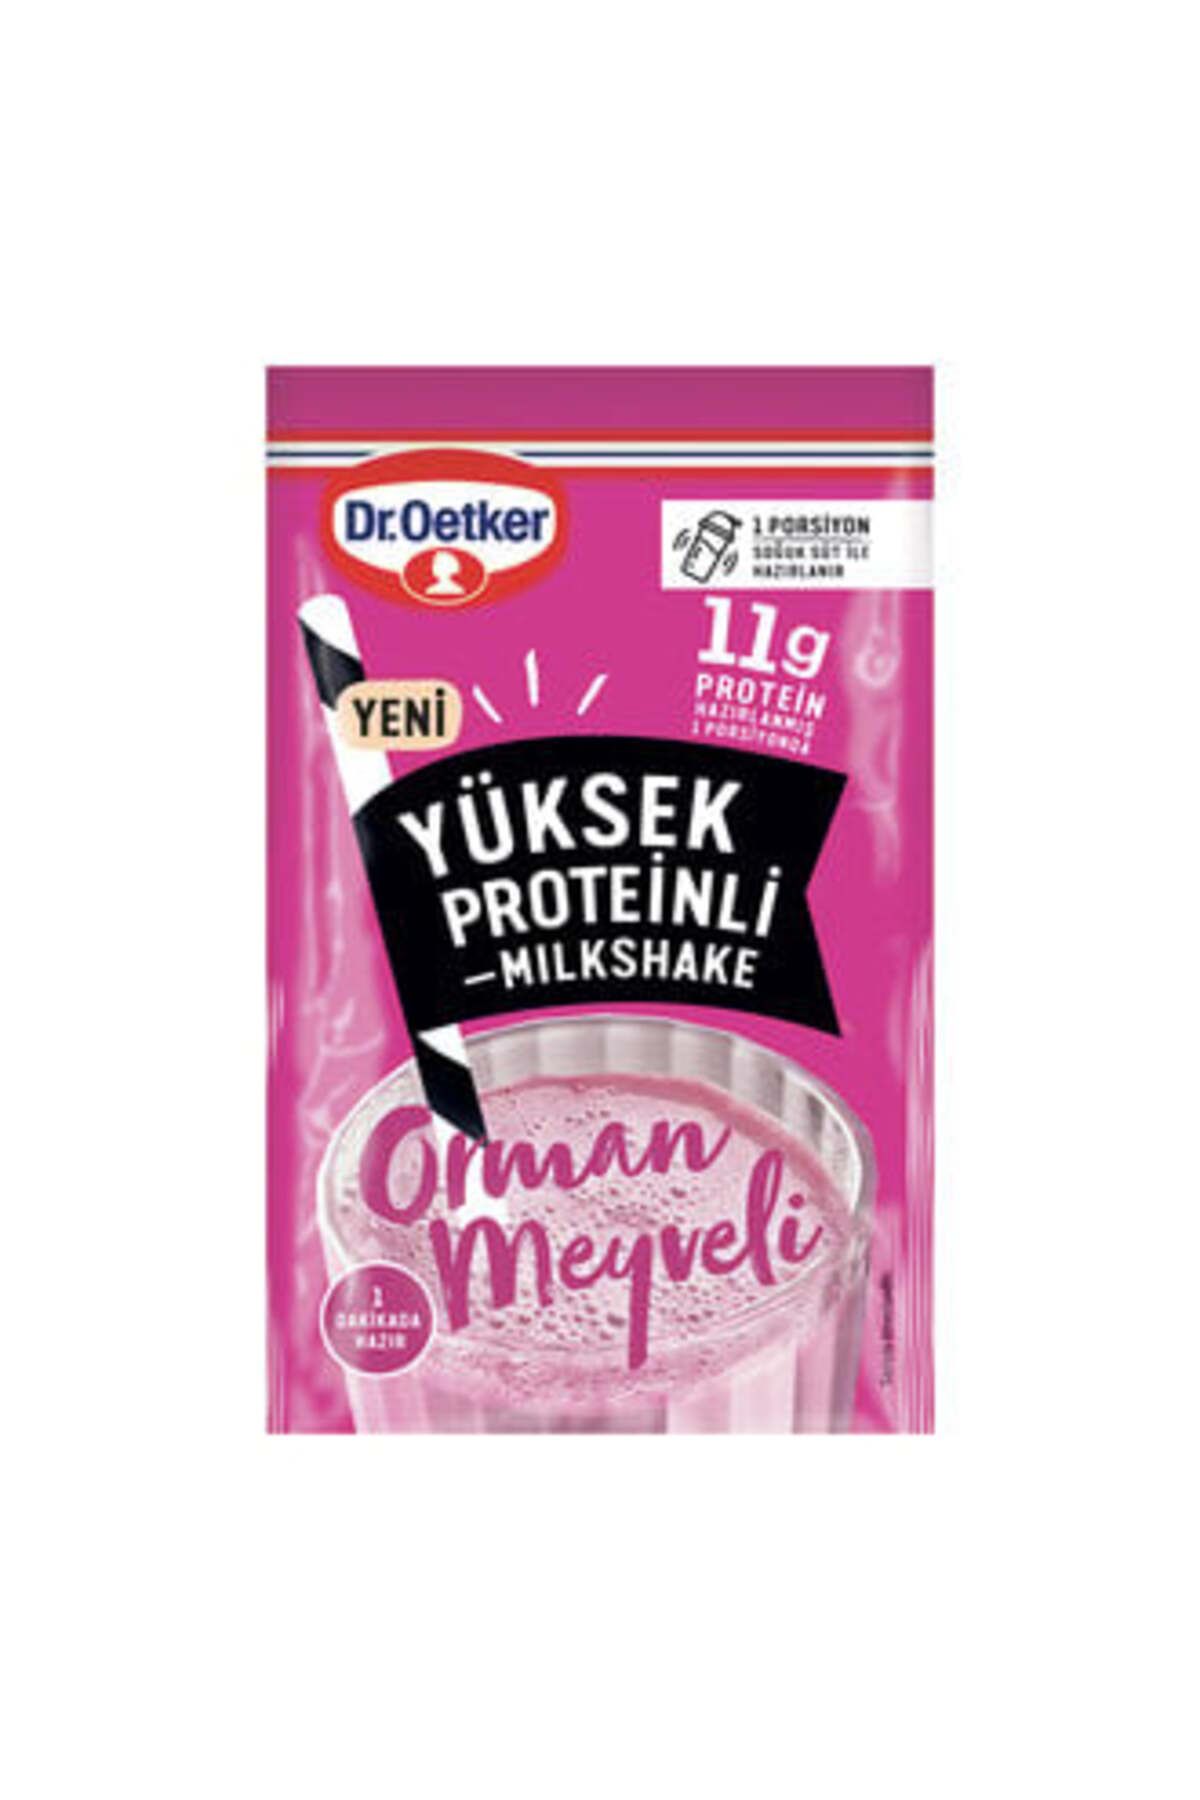 Dr. Oetker Dr.Oetker Orman Meyveli Yüksek Proteinli Milkshake 15 G ( 5 ADET )